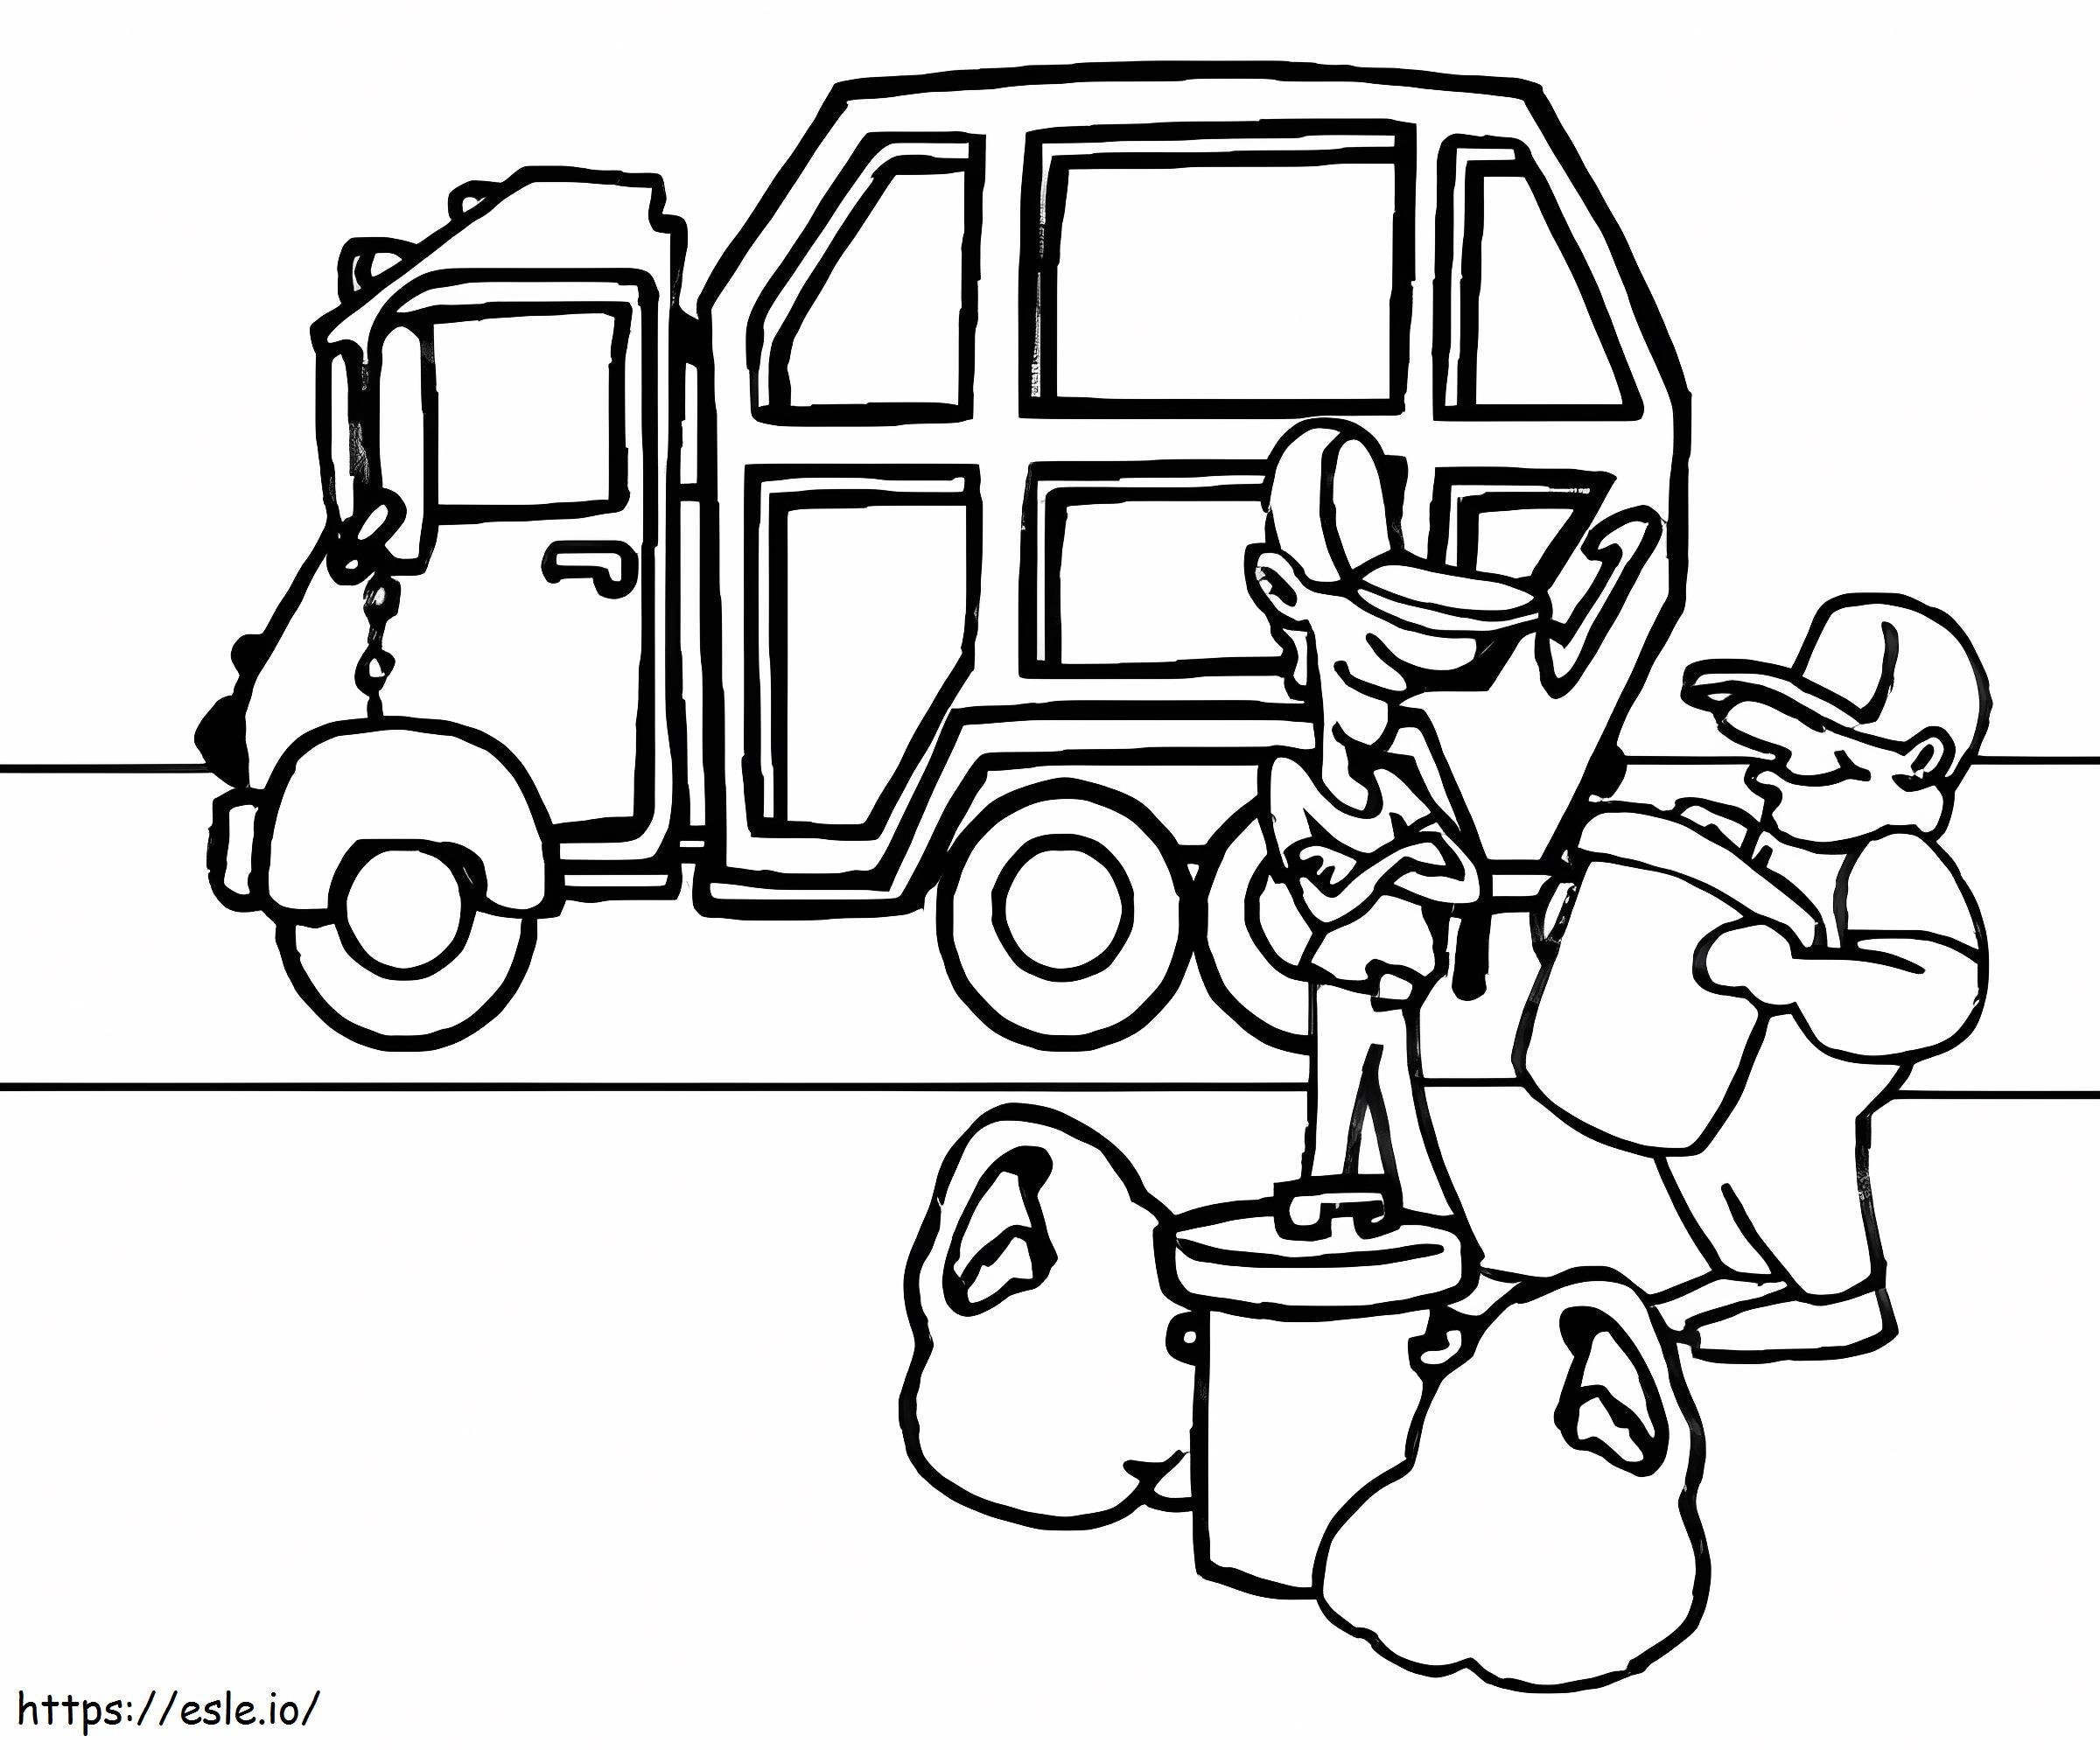 Camion della spazzatura e due netturbini da colorare